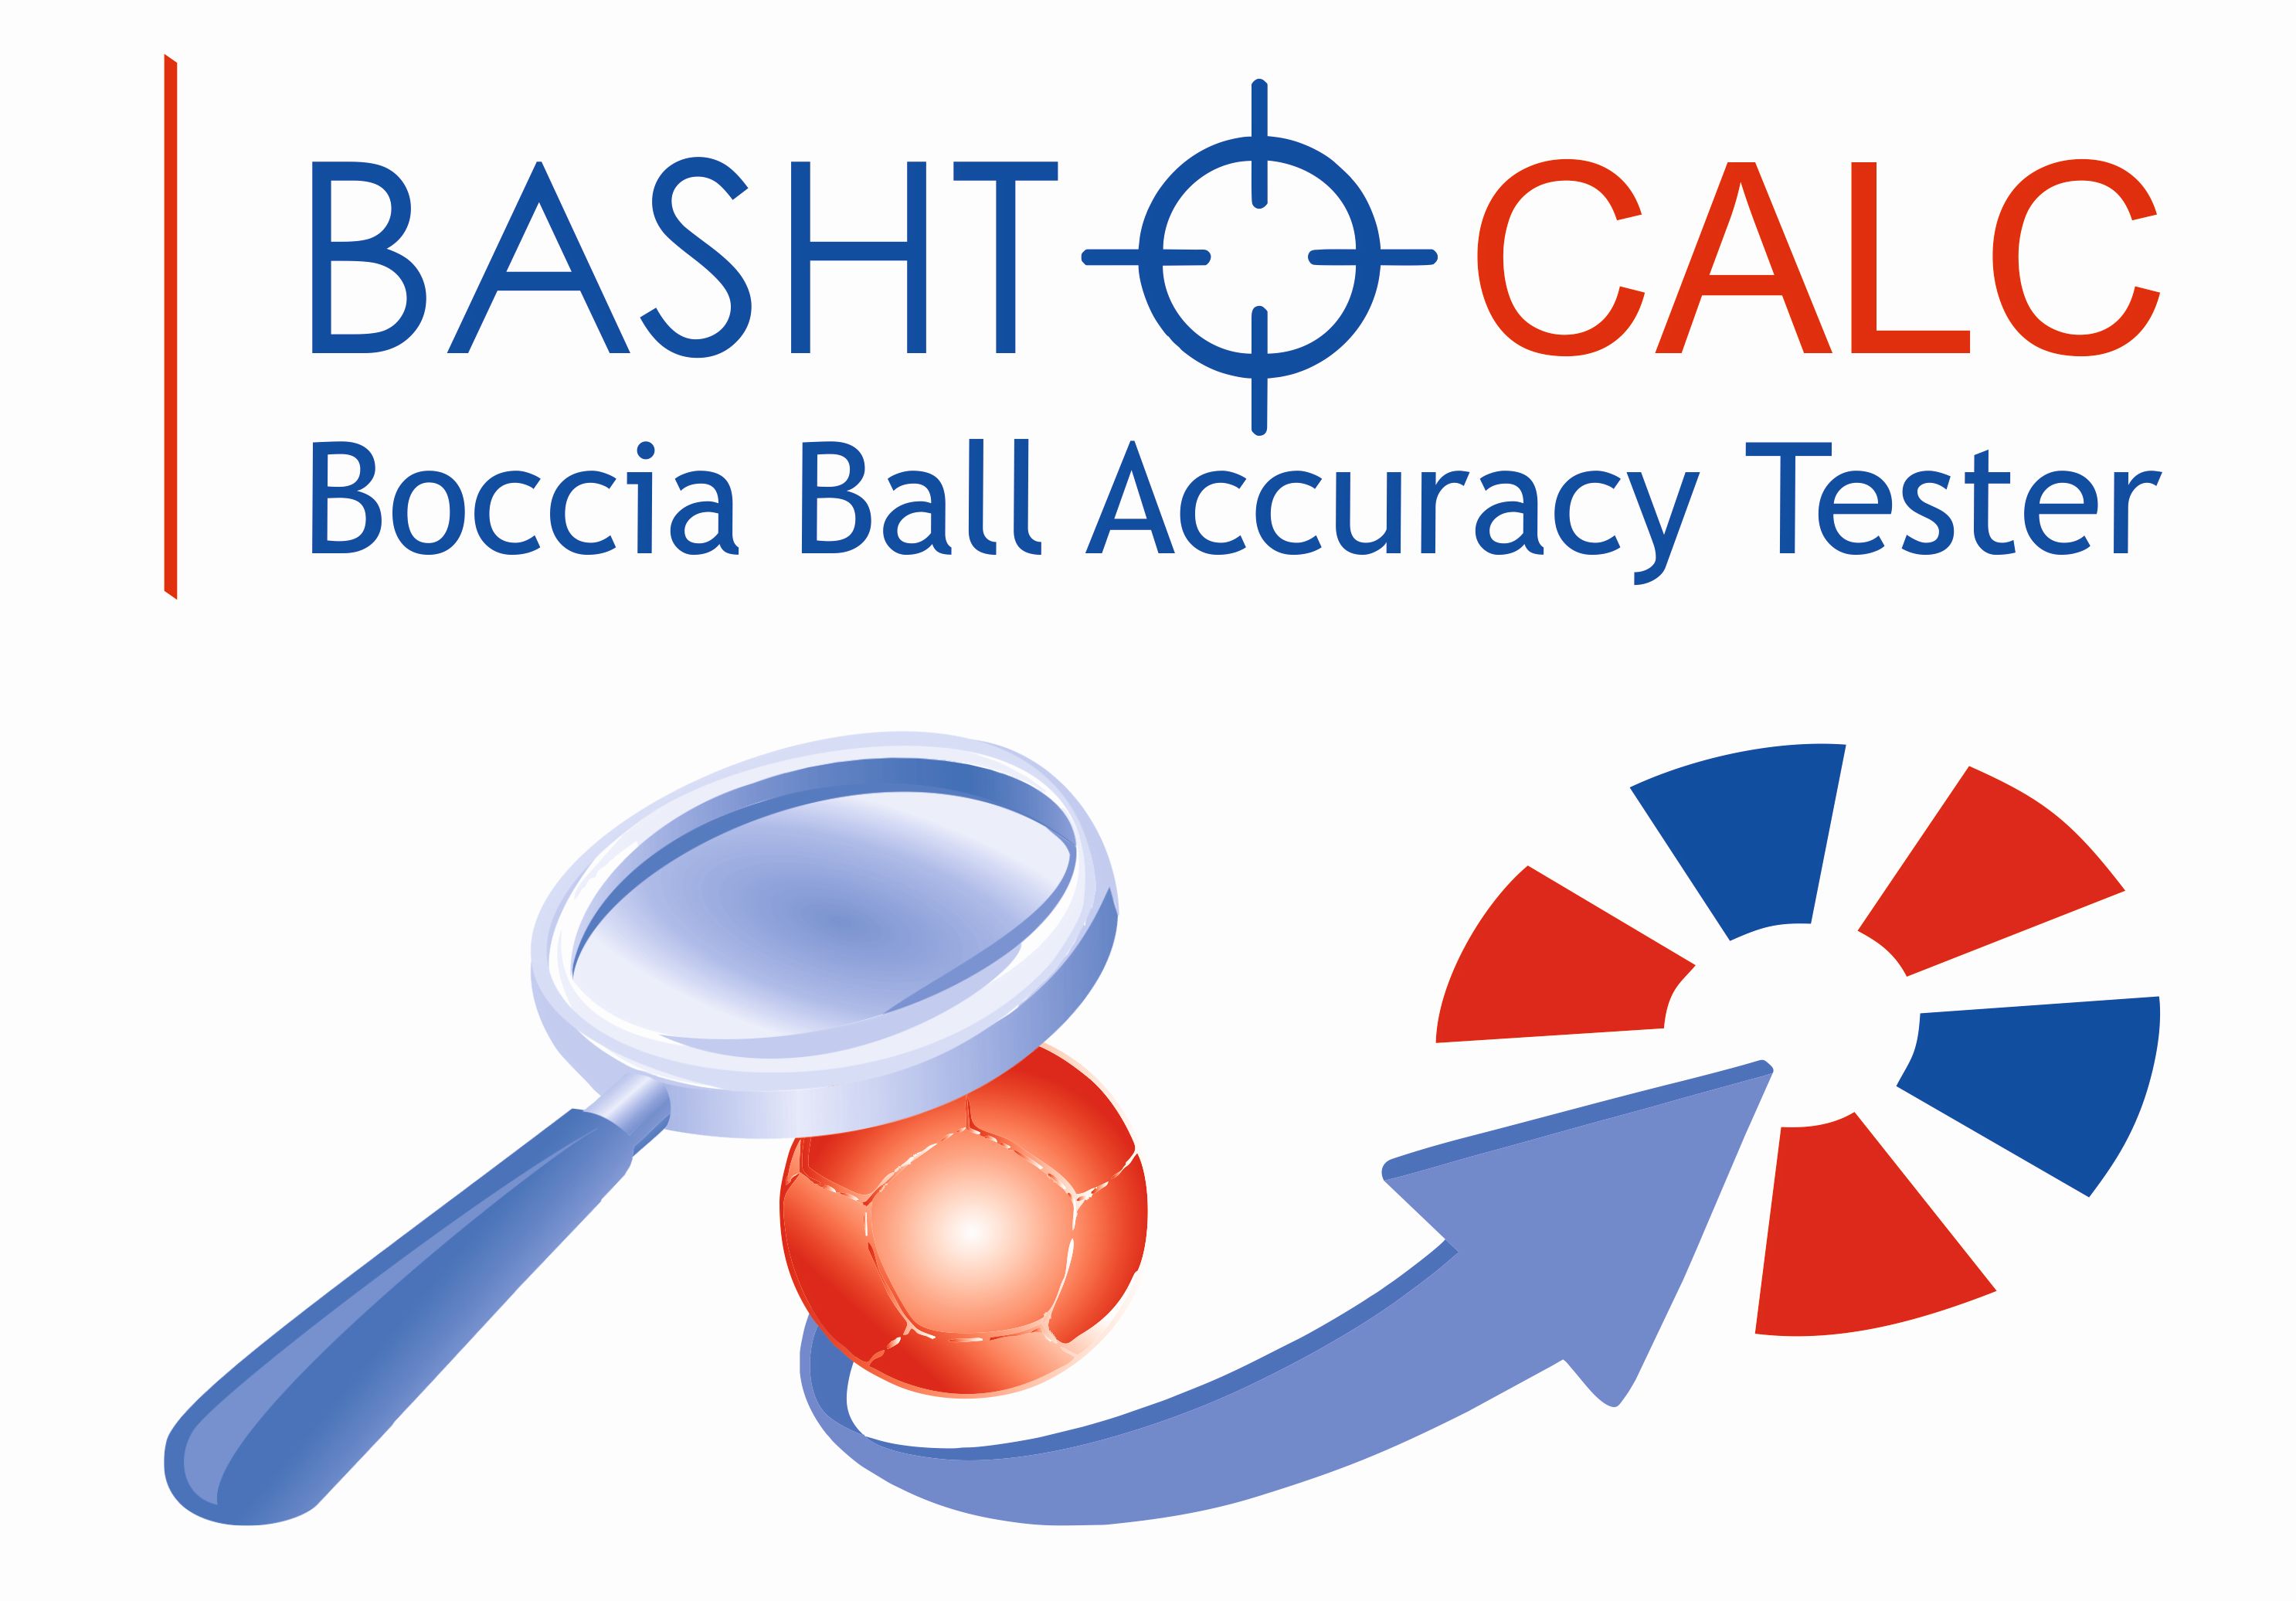 BASHTO CALC - aplikácia na meranie presnosti vašich boccia lôpt